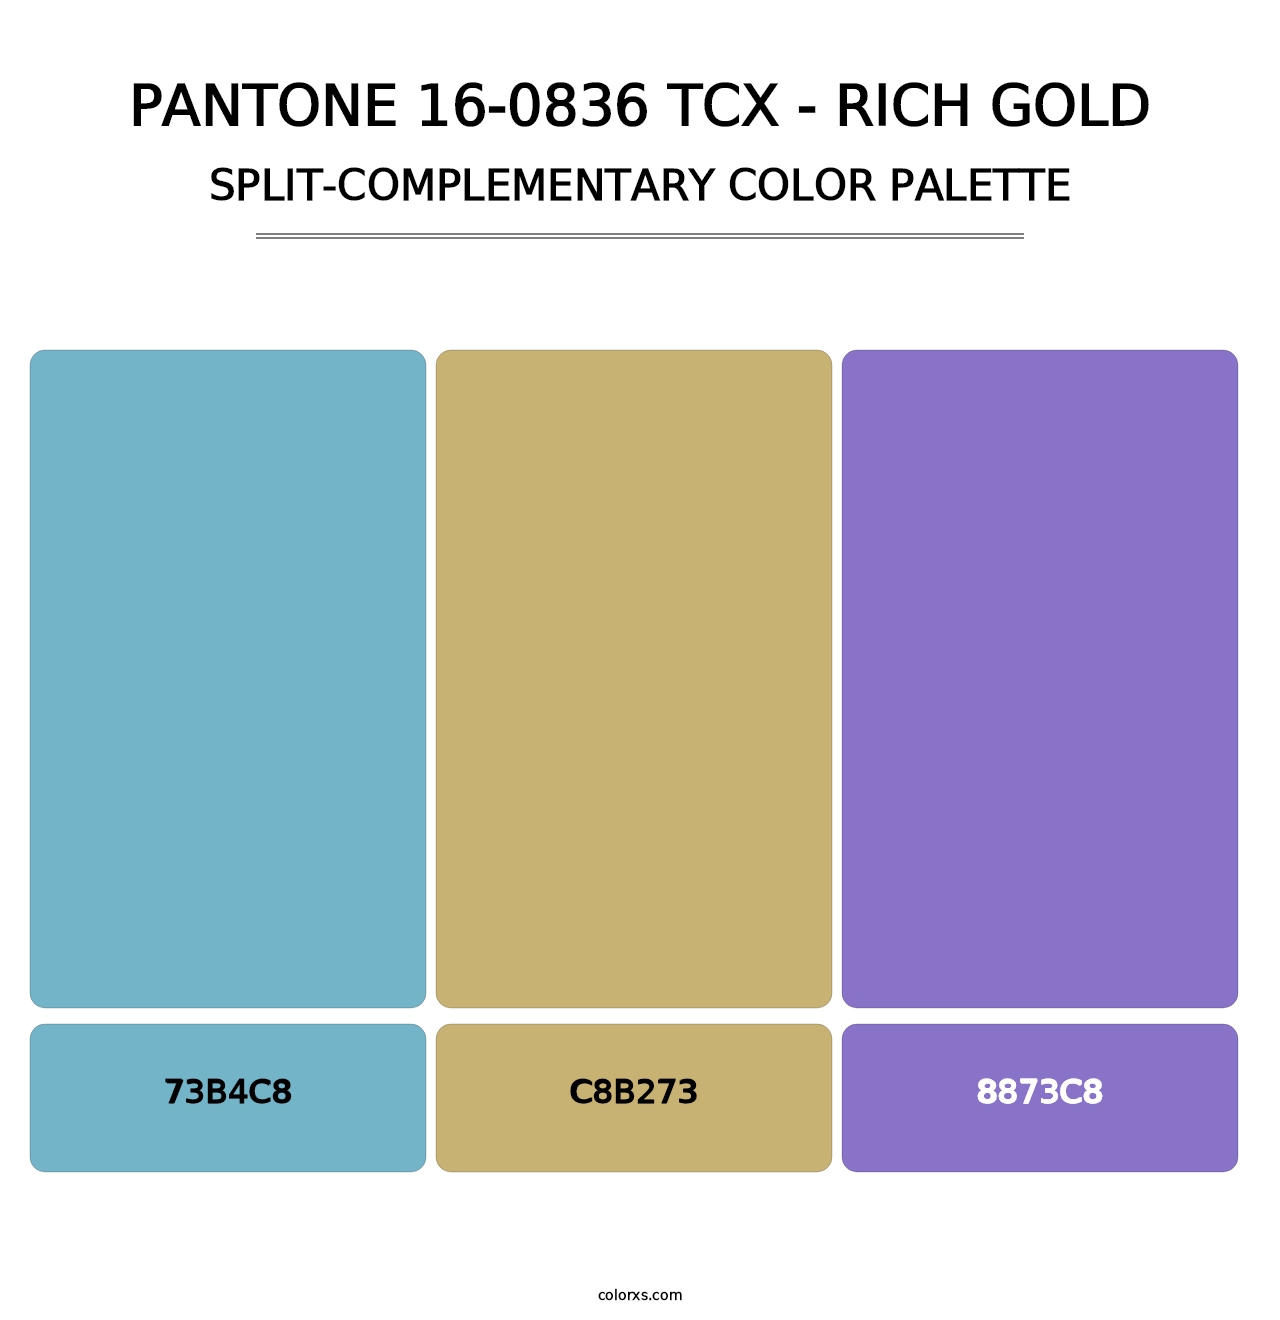 PANTONE 16-0836 TCX - Rich Gold - Split-Complementary Color Palette